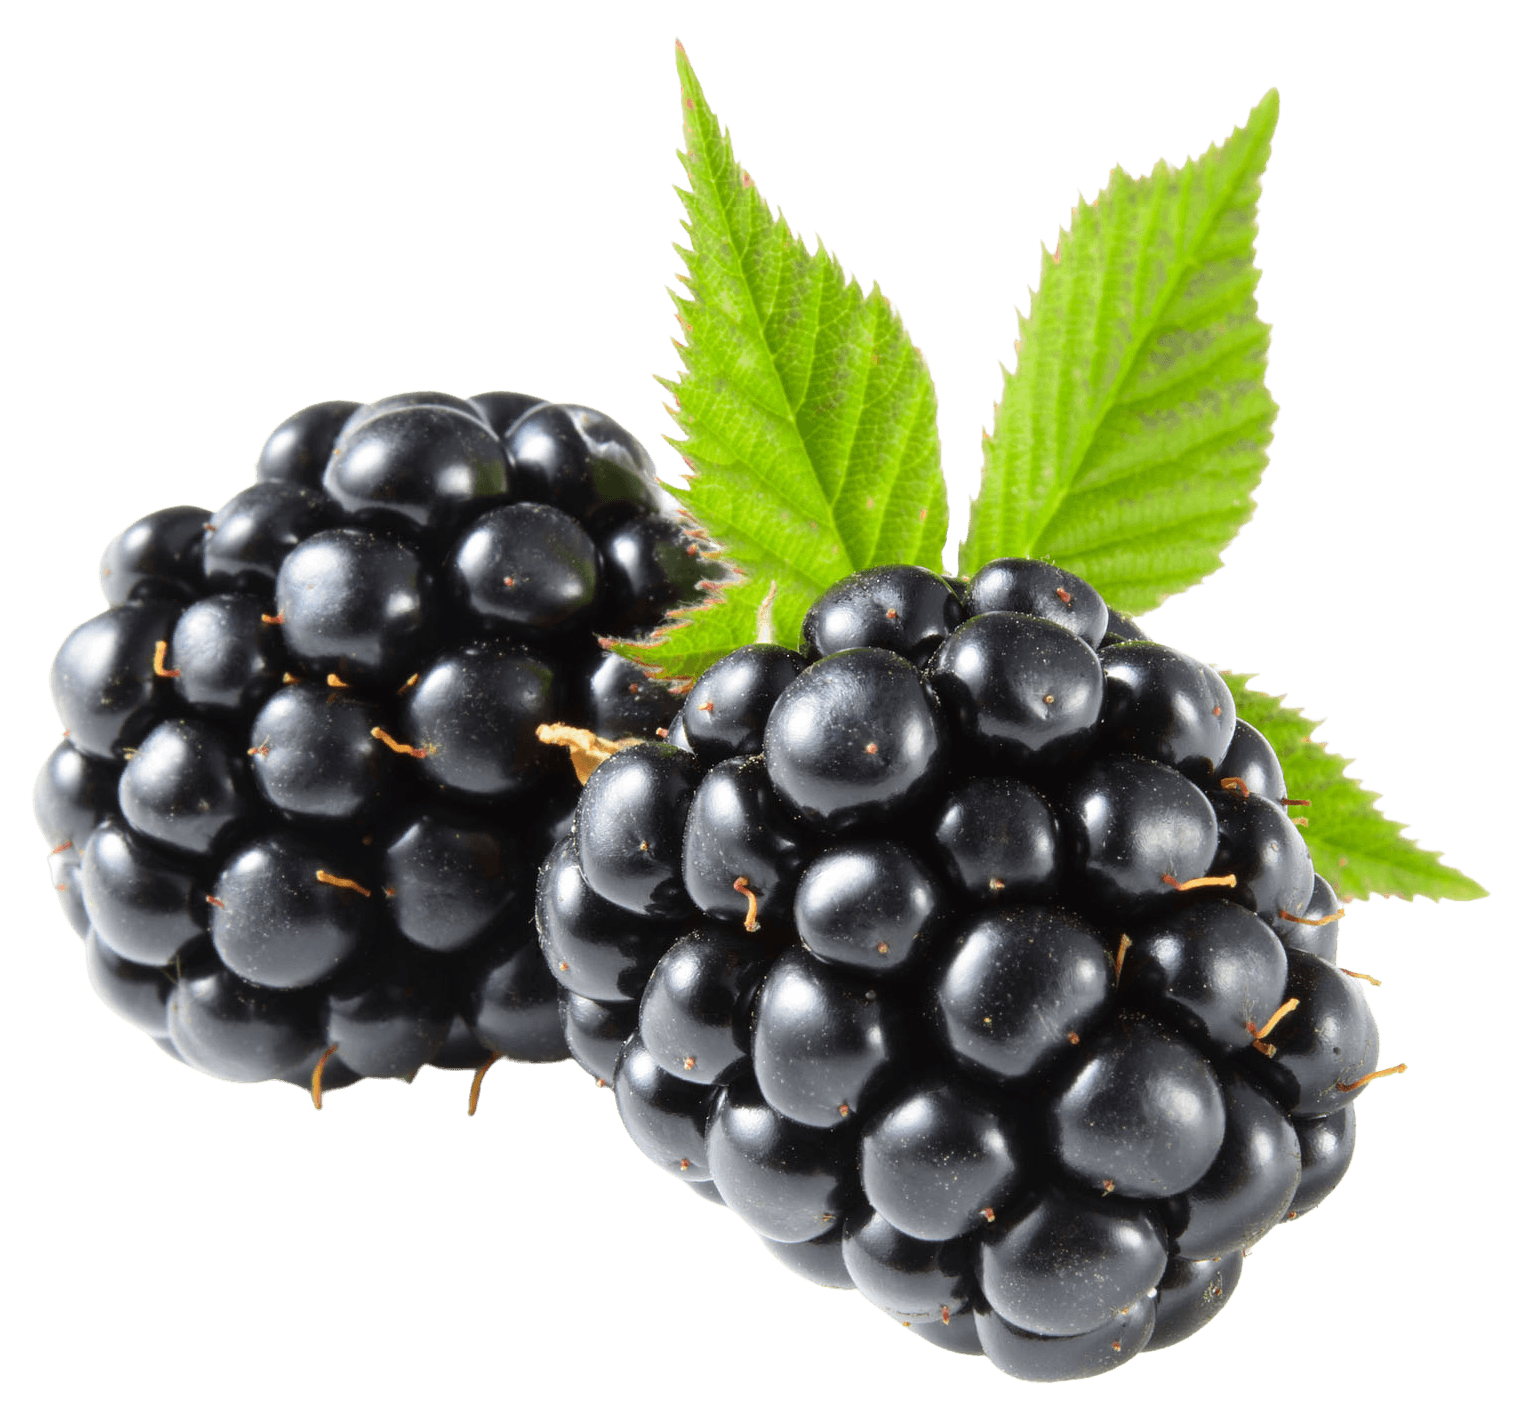 Blackberry crops